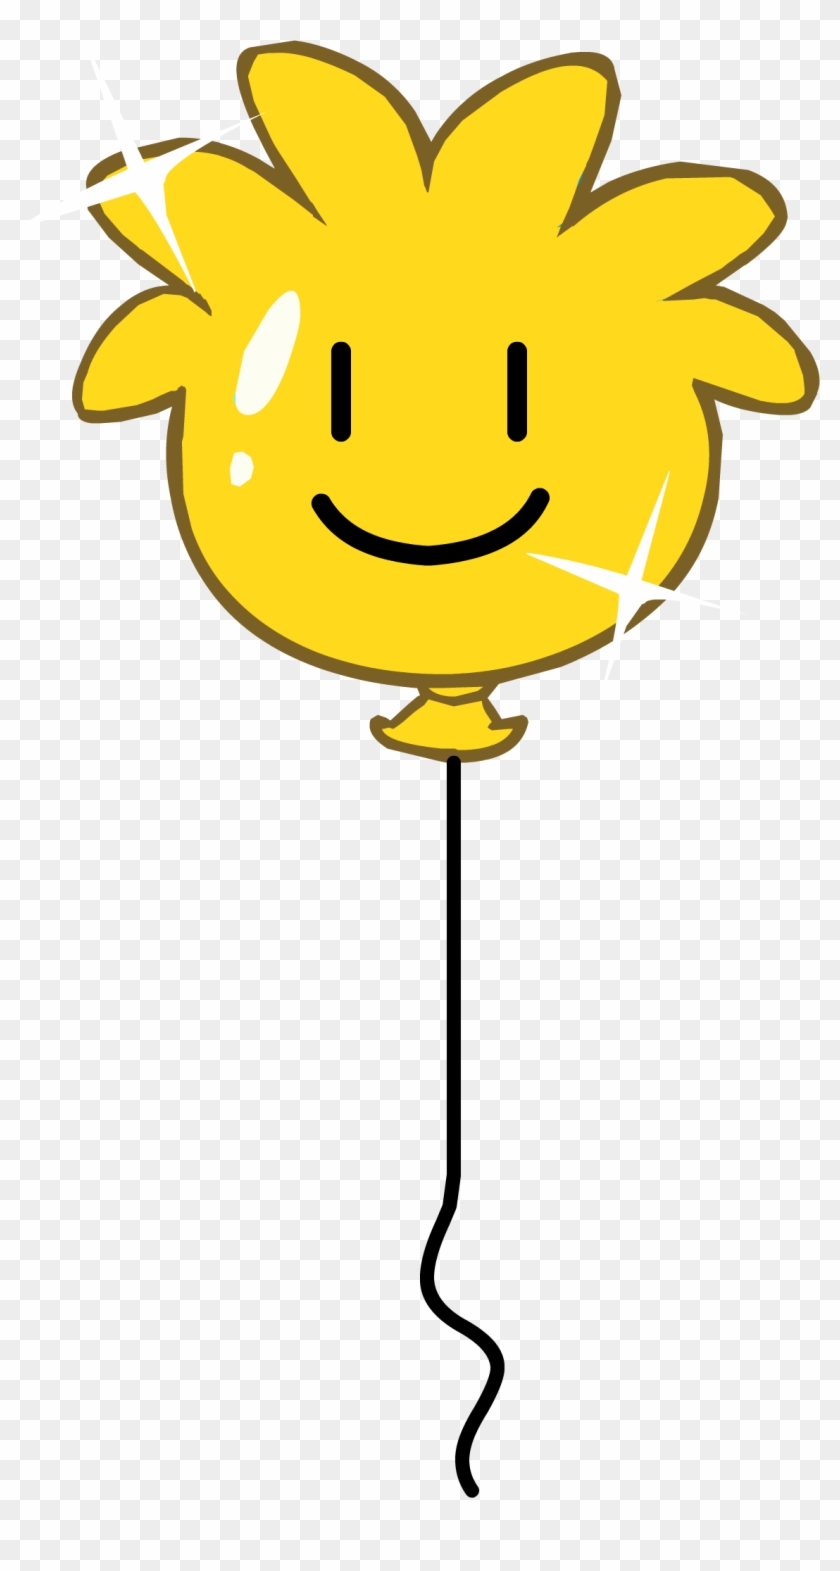 Gold Puffle Balloon - Smiley #1010807